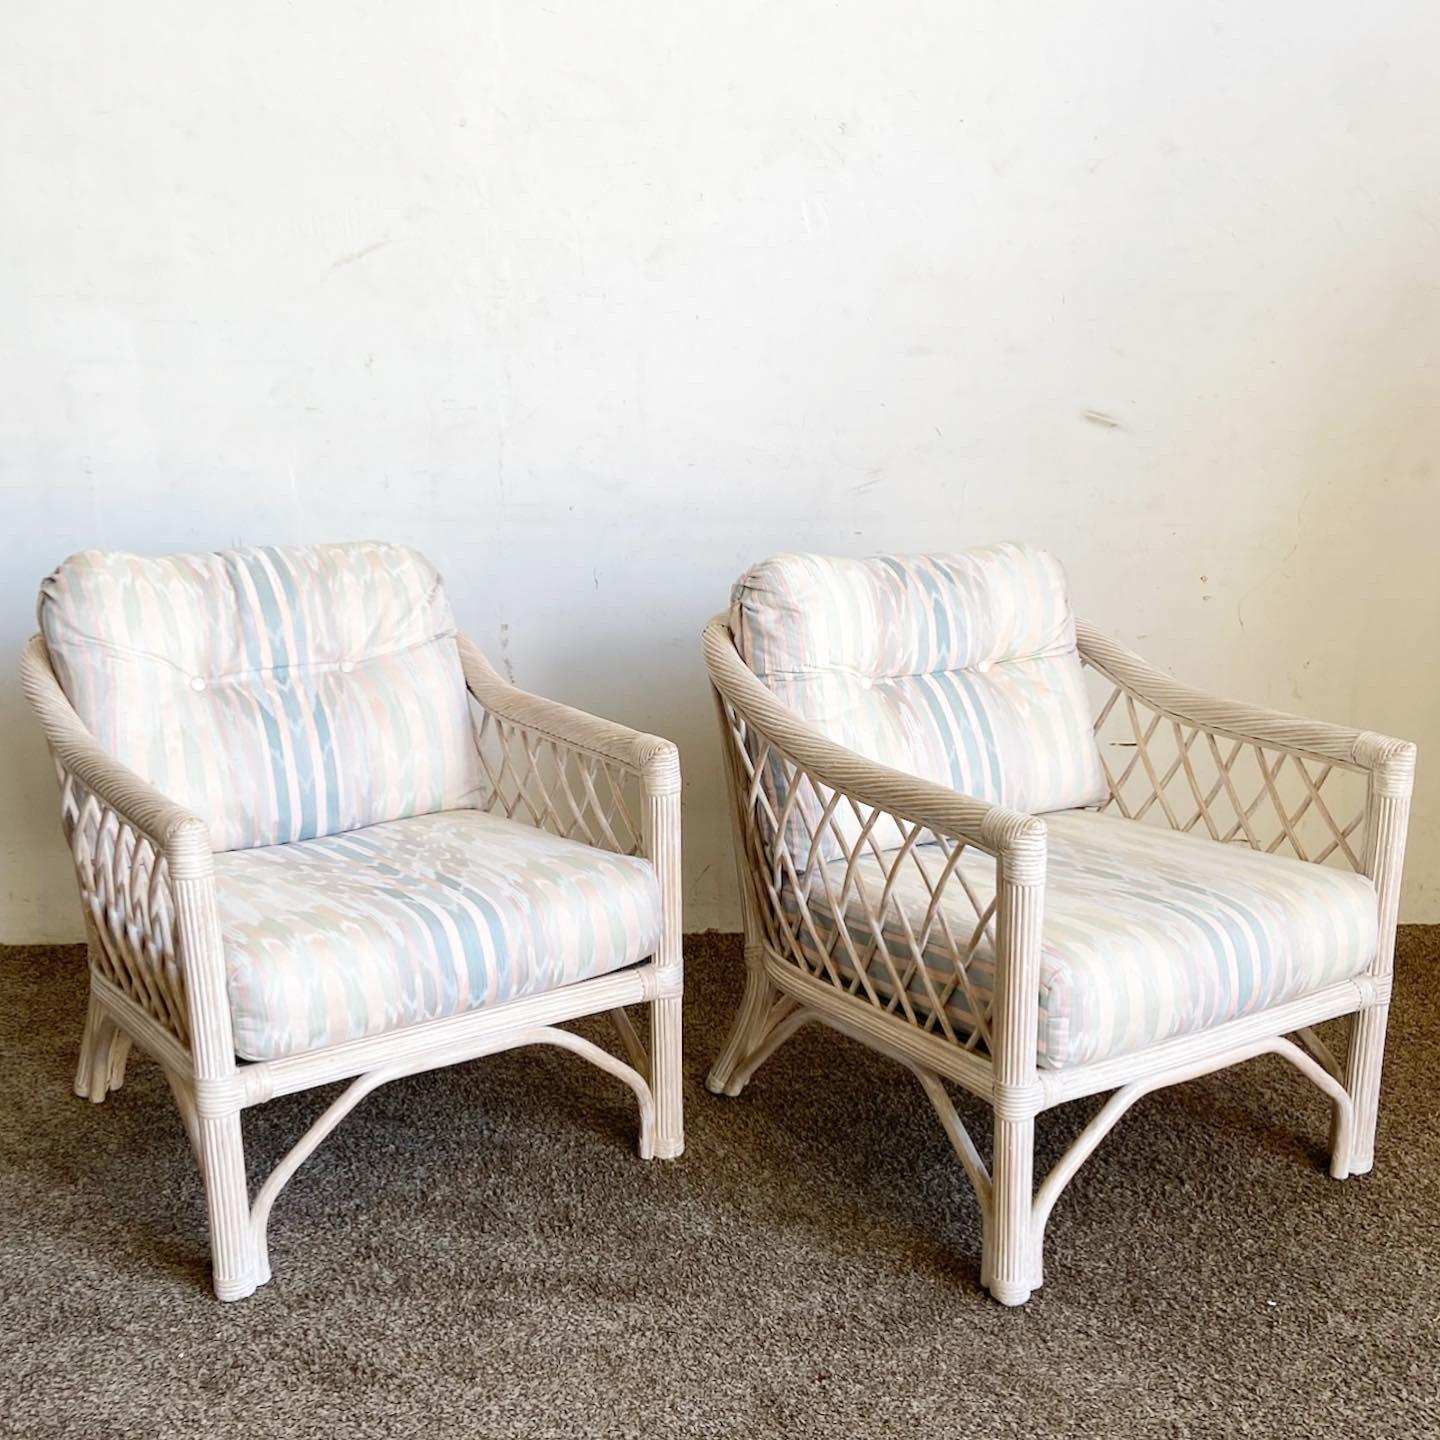 Élevez votre espace avec les chaises à accoudoirs Boho Chic en rotin et en roseau crayonné de Henry Link. Un mélange parfait d'élégance et de confort.
Les pièces vintage peuvent présenter des signes d'usure liés à l'âge. Examinez attentivement les